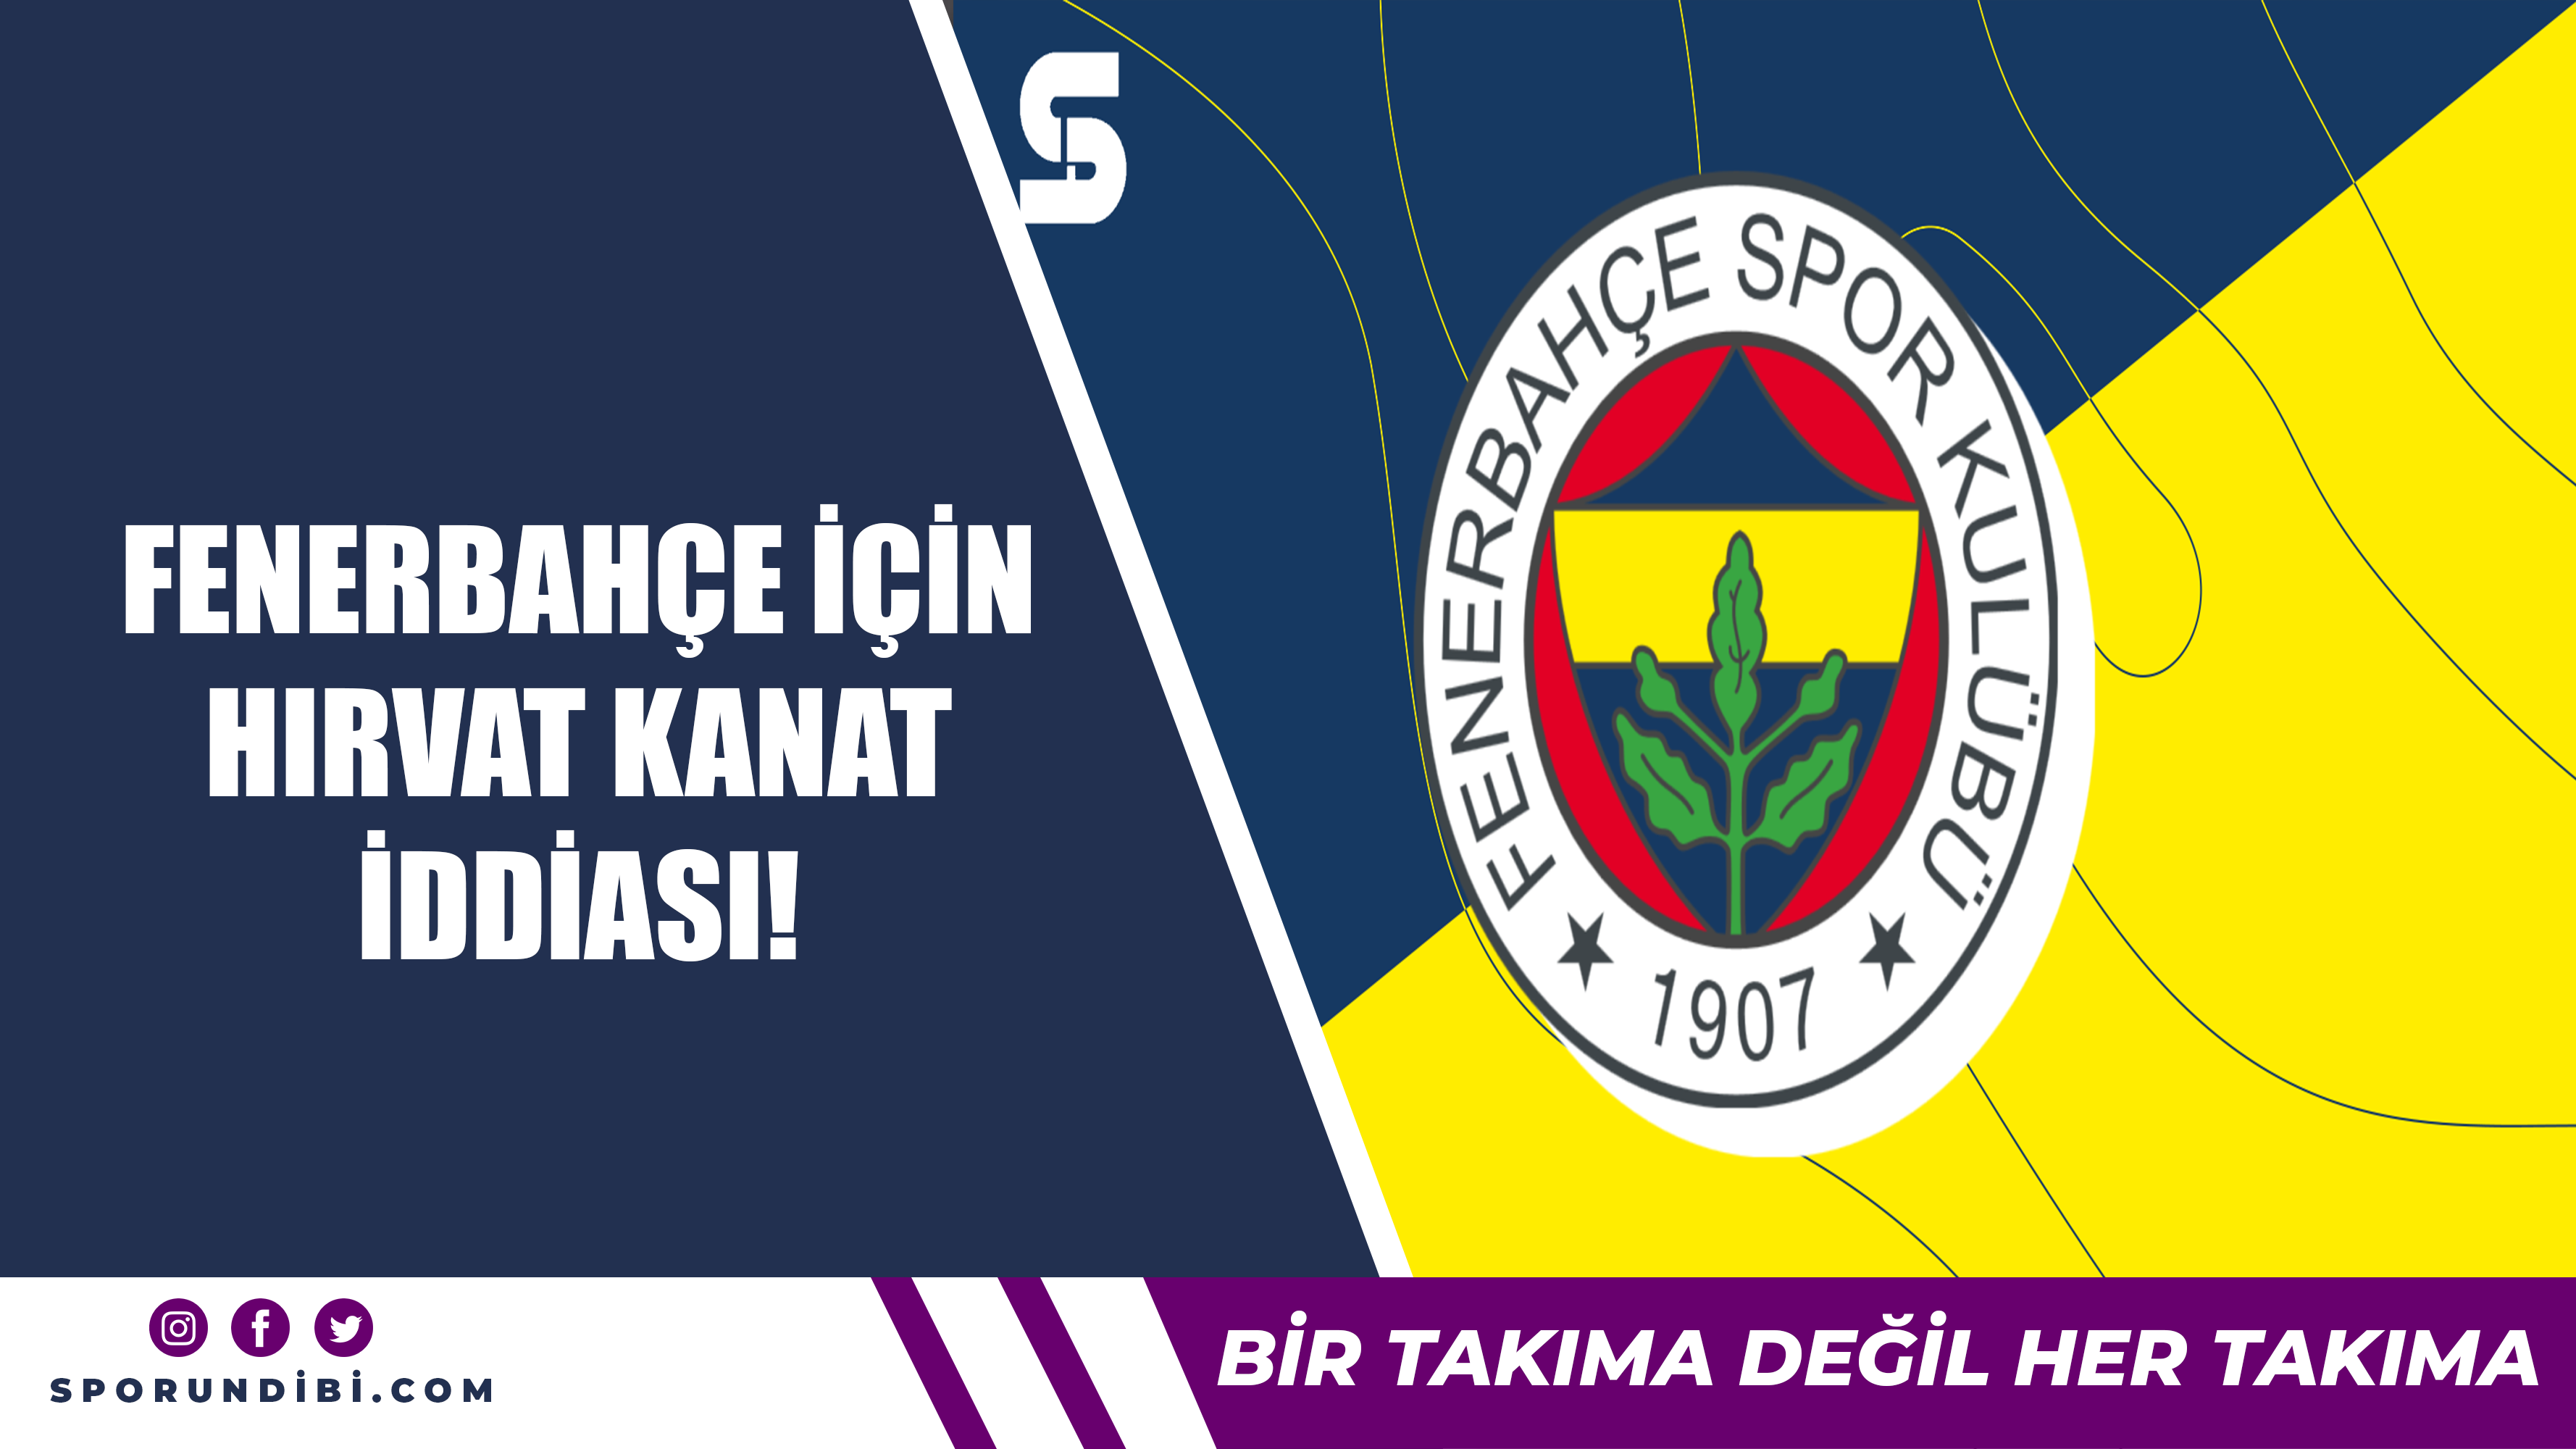 Fenerbahçe için Hırvat kanat iddiası!